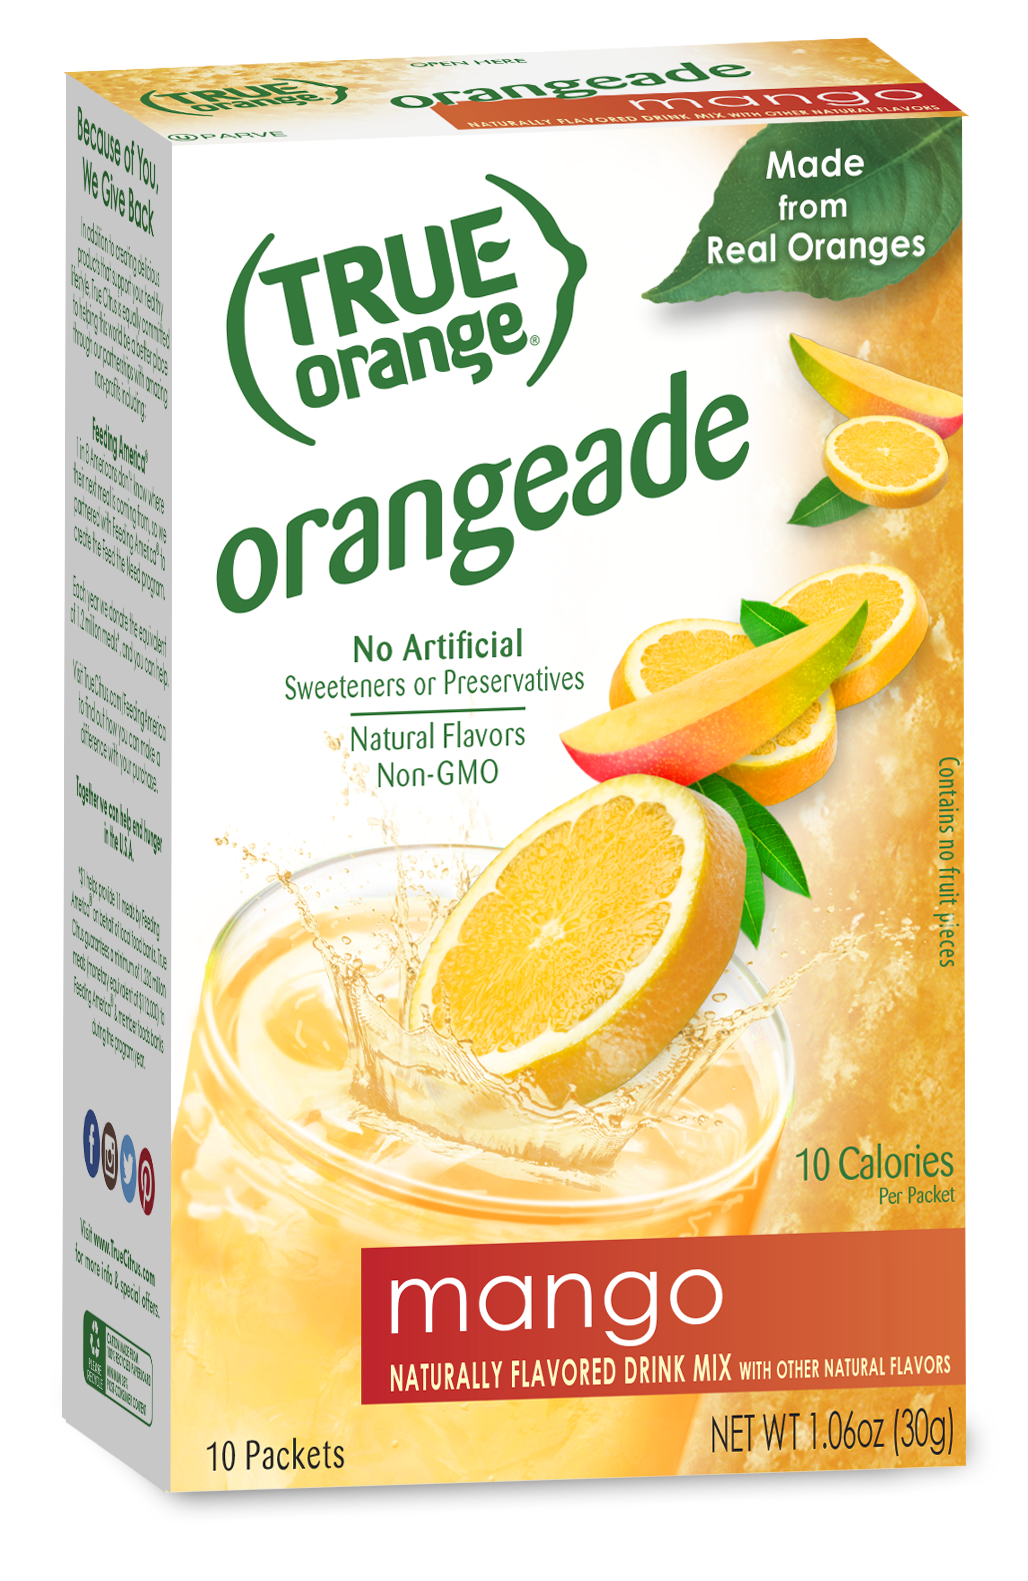 True Citrus True Orange Mango 12 units per case 0.2 oz